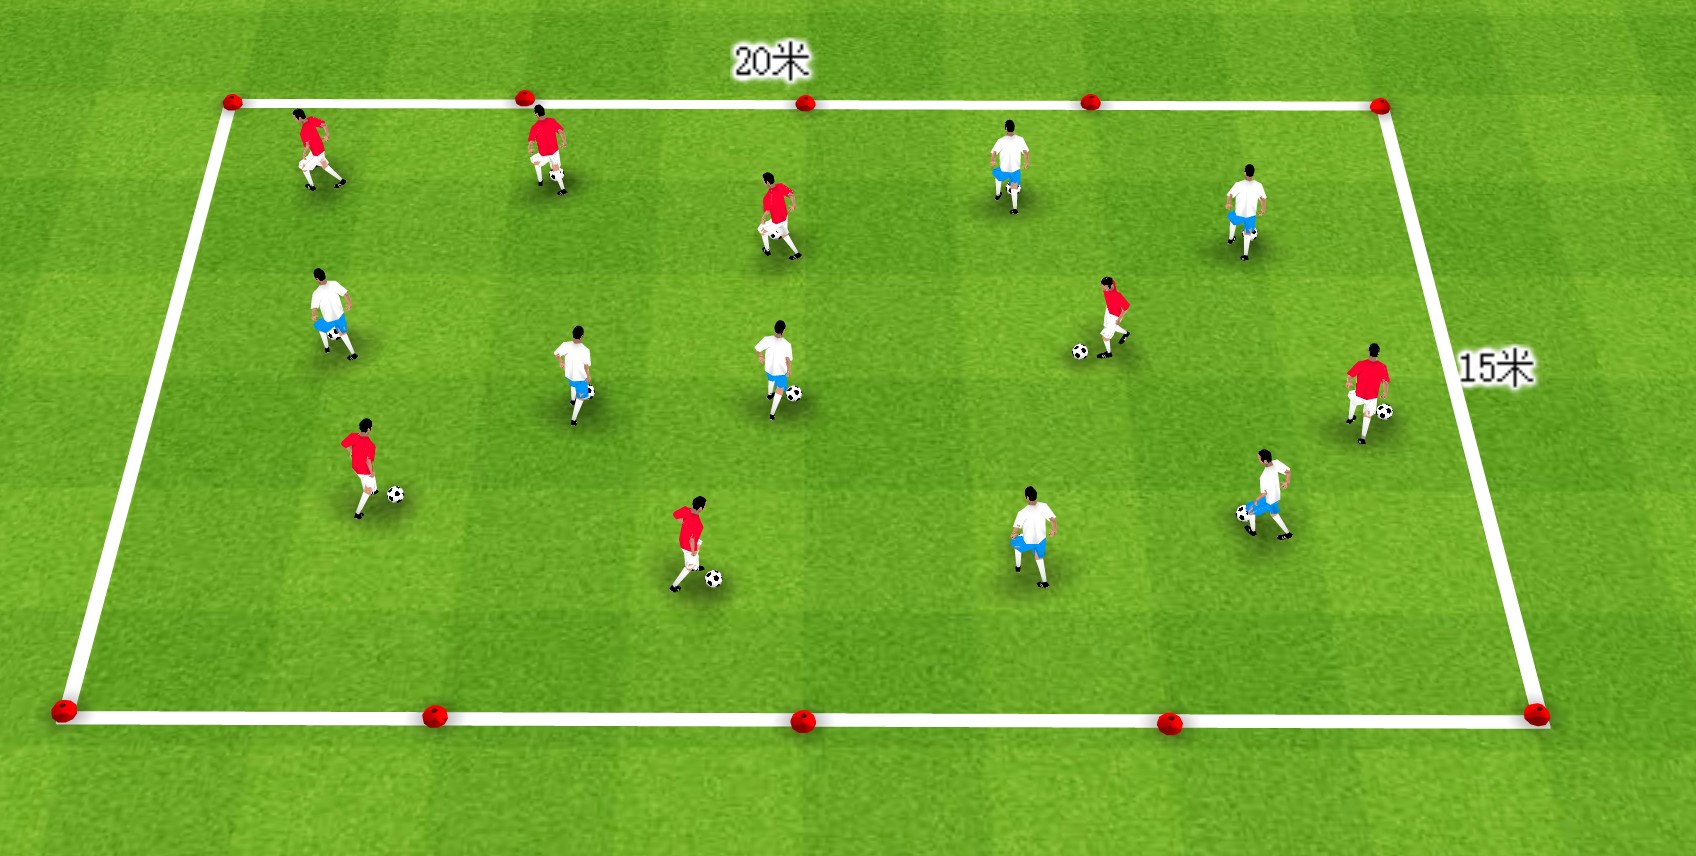 足球教案:如何提升球员在实战中的控球能力? 